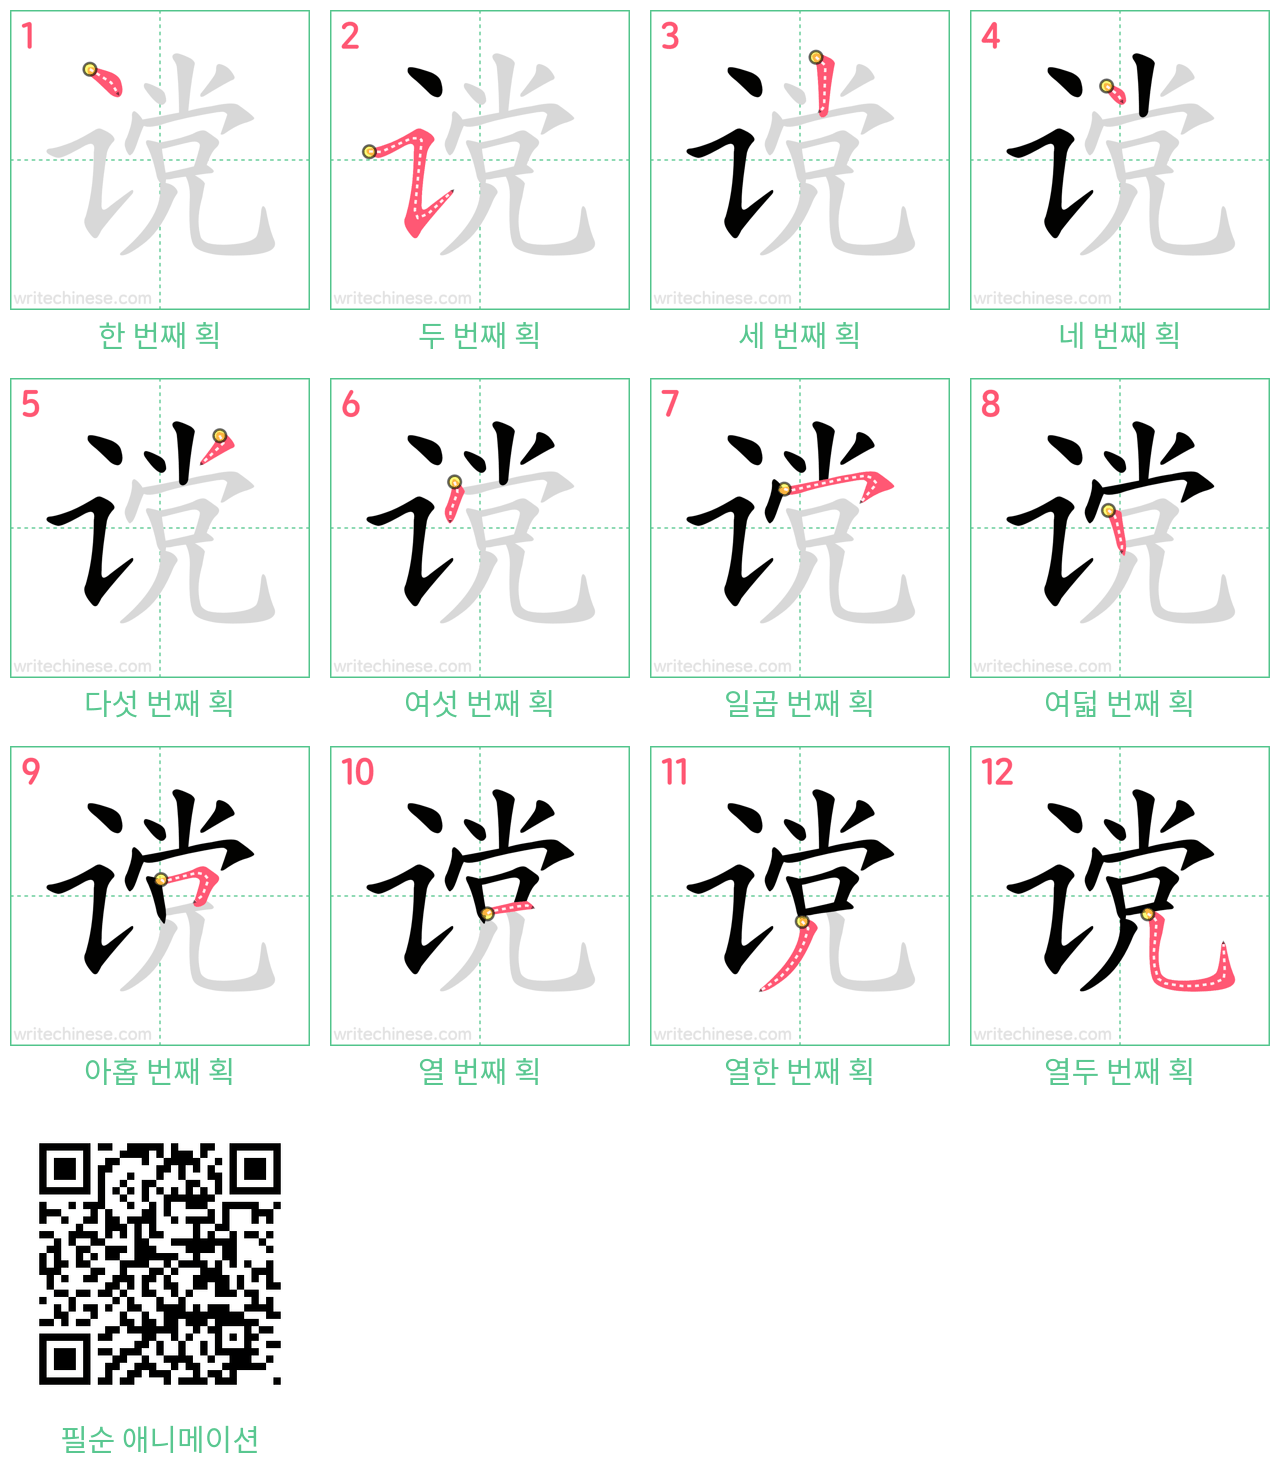 谠 step-by-step stroke order diagrams